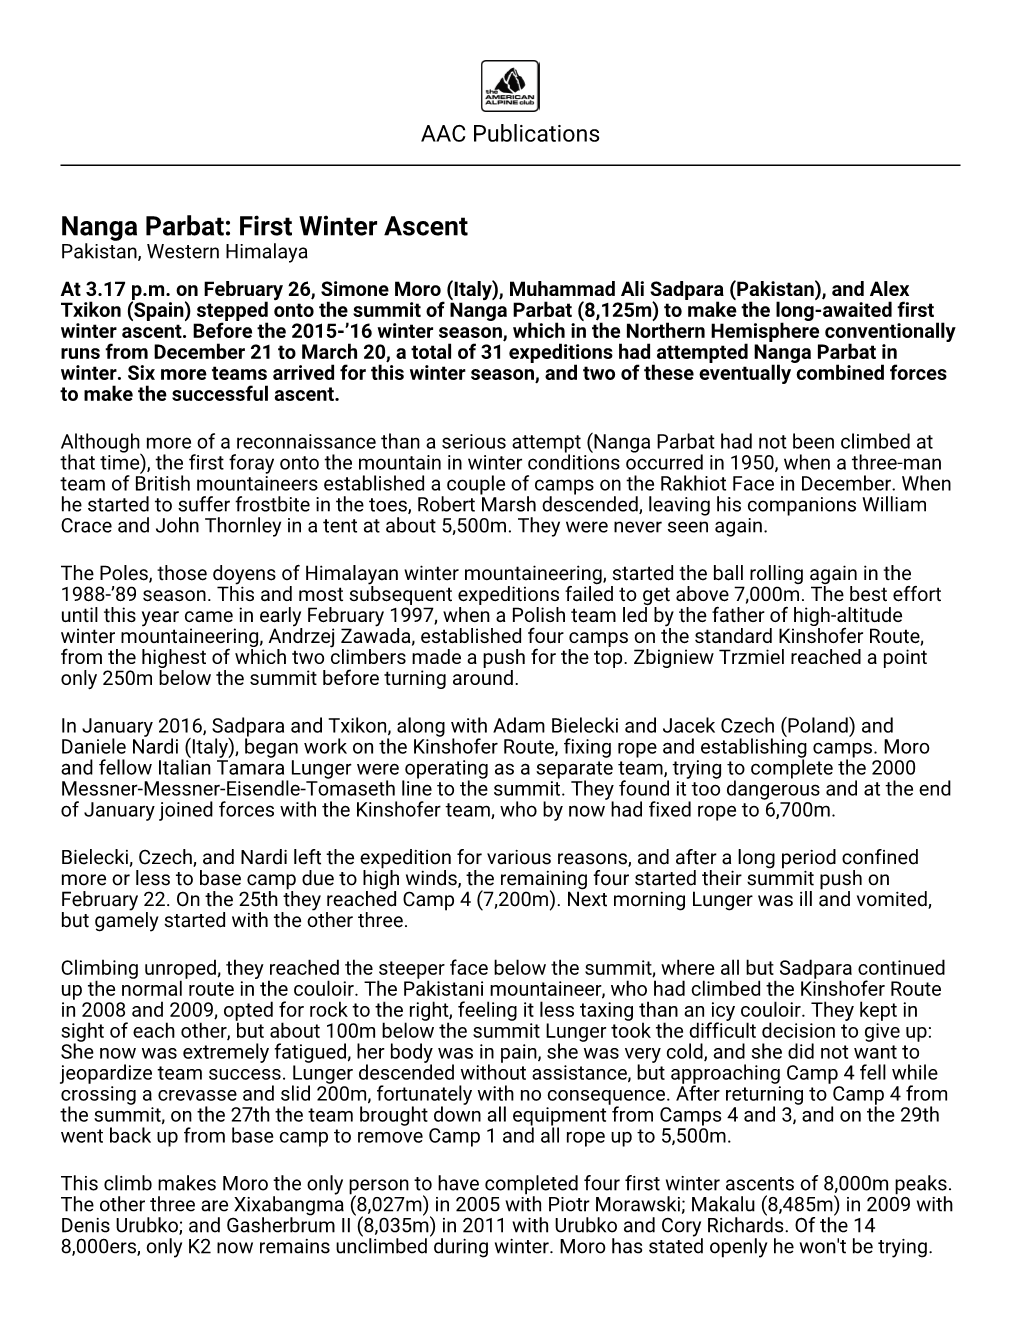 Nanga Parbat: First Winter Ascent Pakistan, Western Himalaya at 3.17 P.M